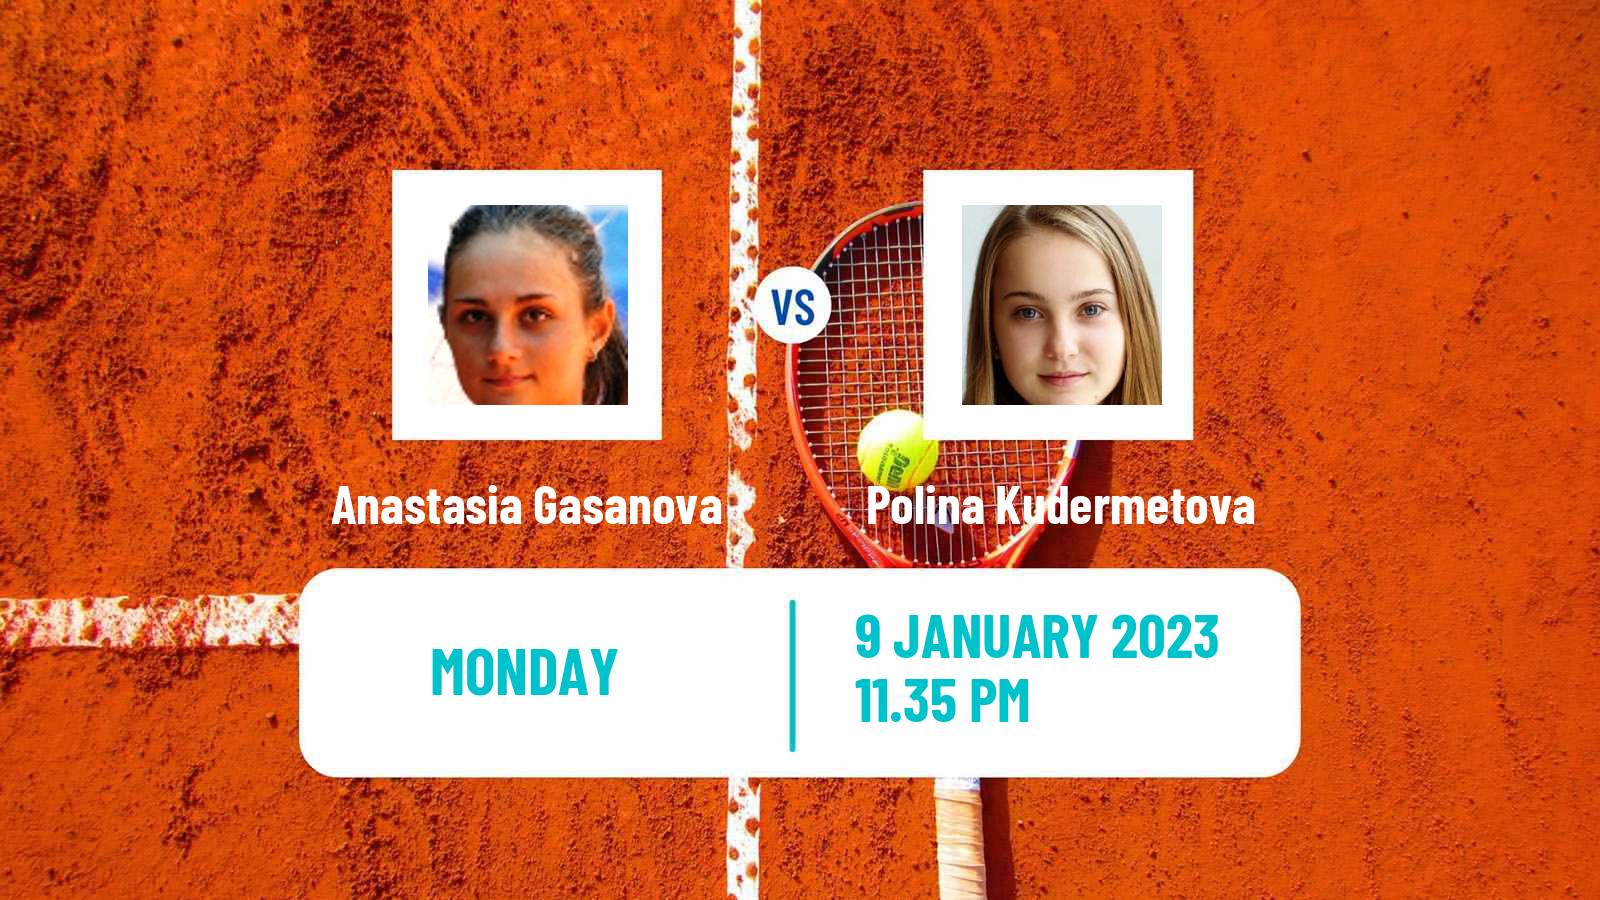 Tennis WTA Australian Open Anastasia Gasanova - Polina Kudermetova